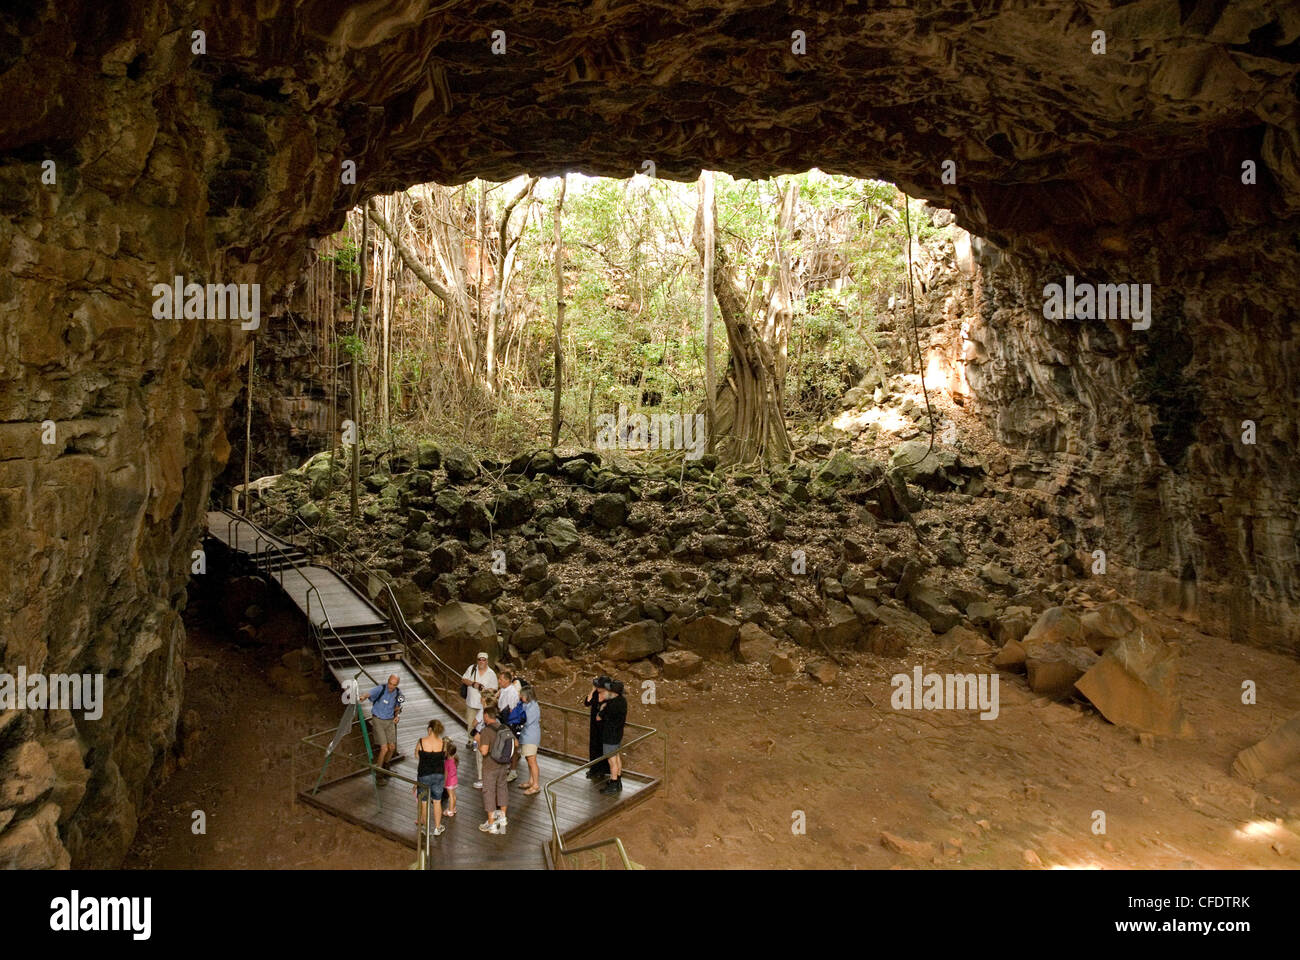 Grotte d'Archway, le segment des très grands grotte de lave, lave de Undara National Park, Queensland, Australie, Pacifique Banque D'Images